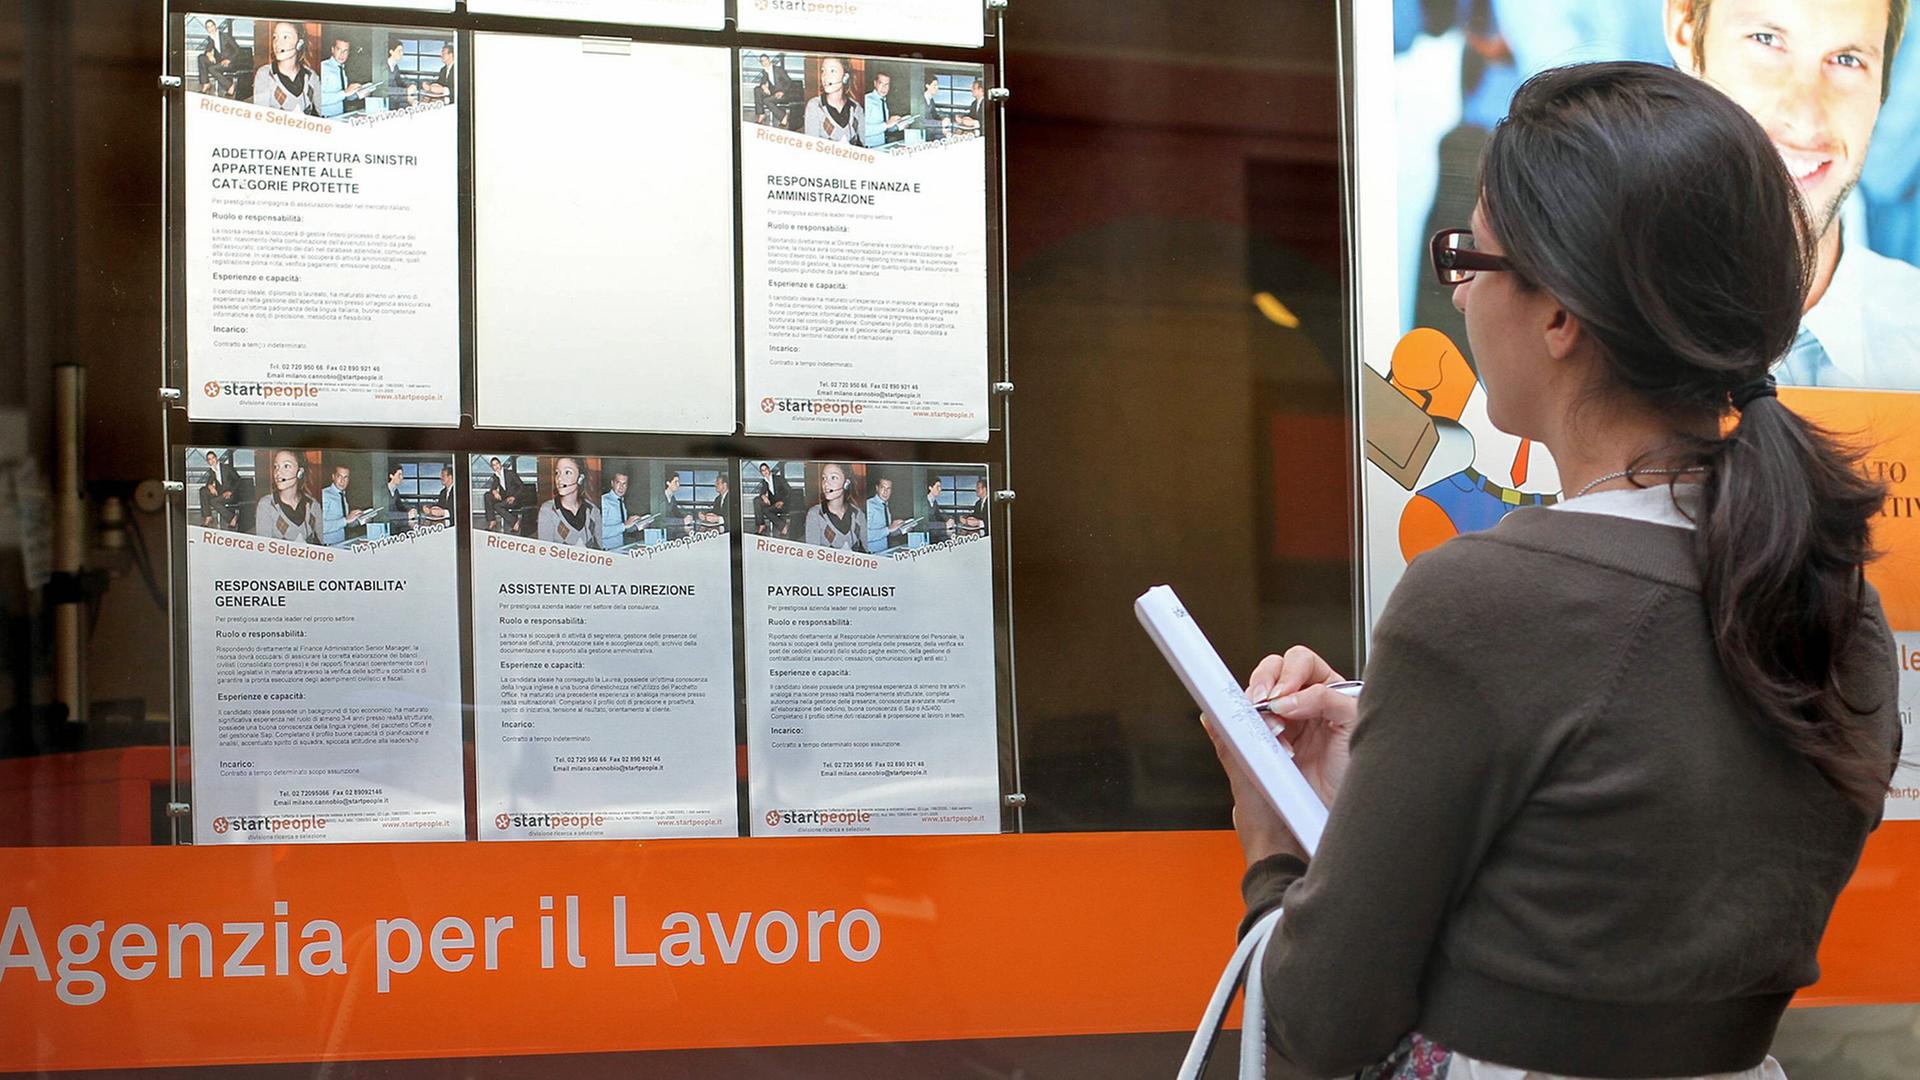 Eine junge Frau studiert in Mailand Stellenanzeigen.